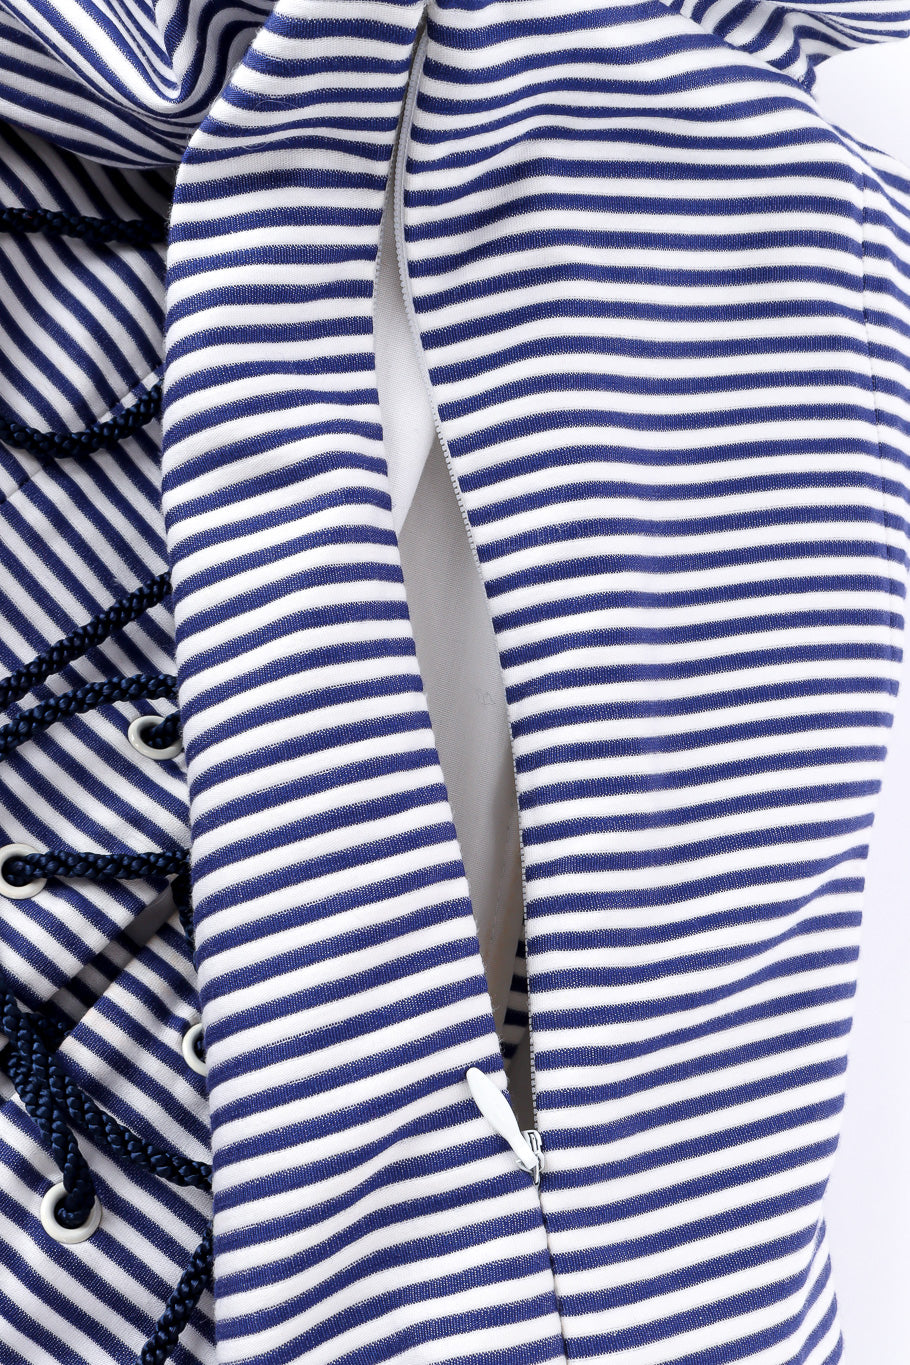 Vintage Yves Saint Laurent Sailor Stripe Corset Dress zipper detail @recessla